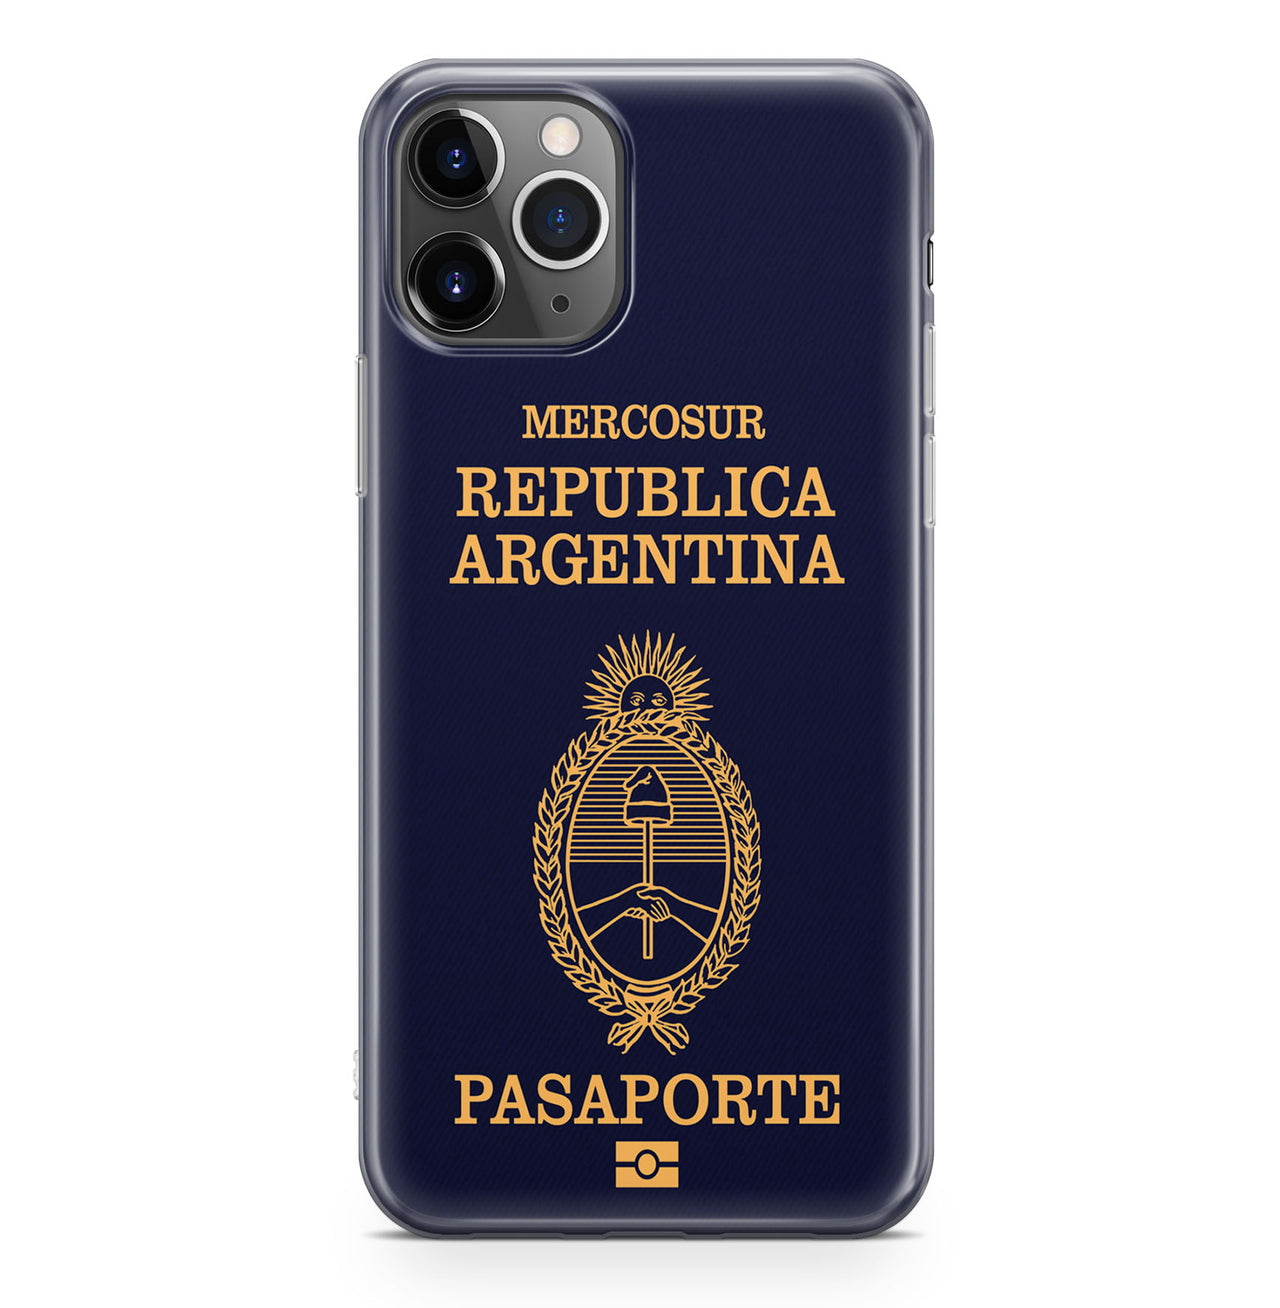 Argentina Passport Designed iPhone Cases